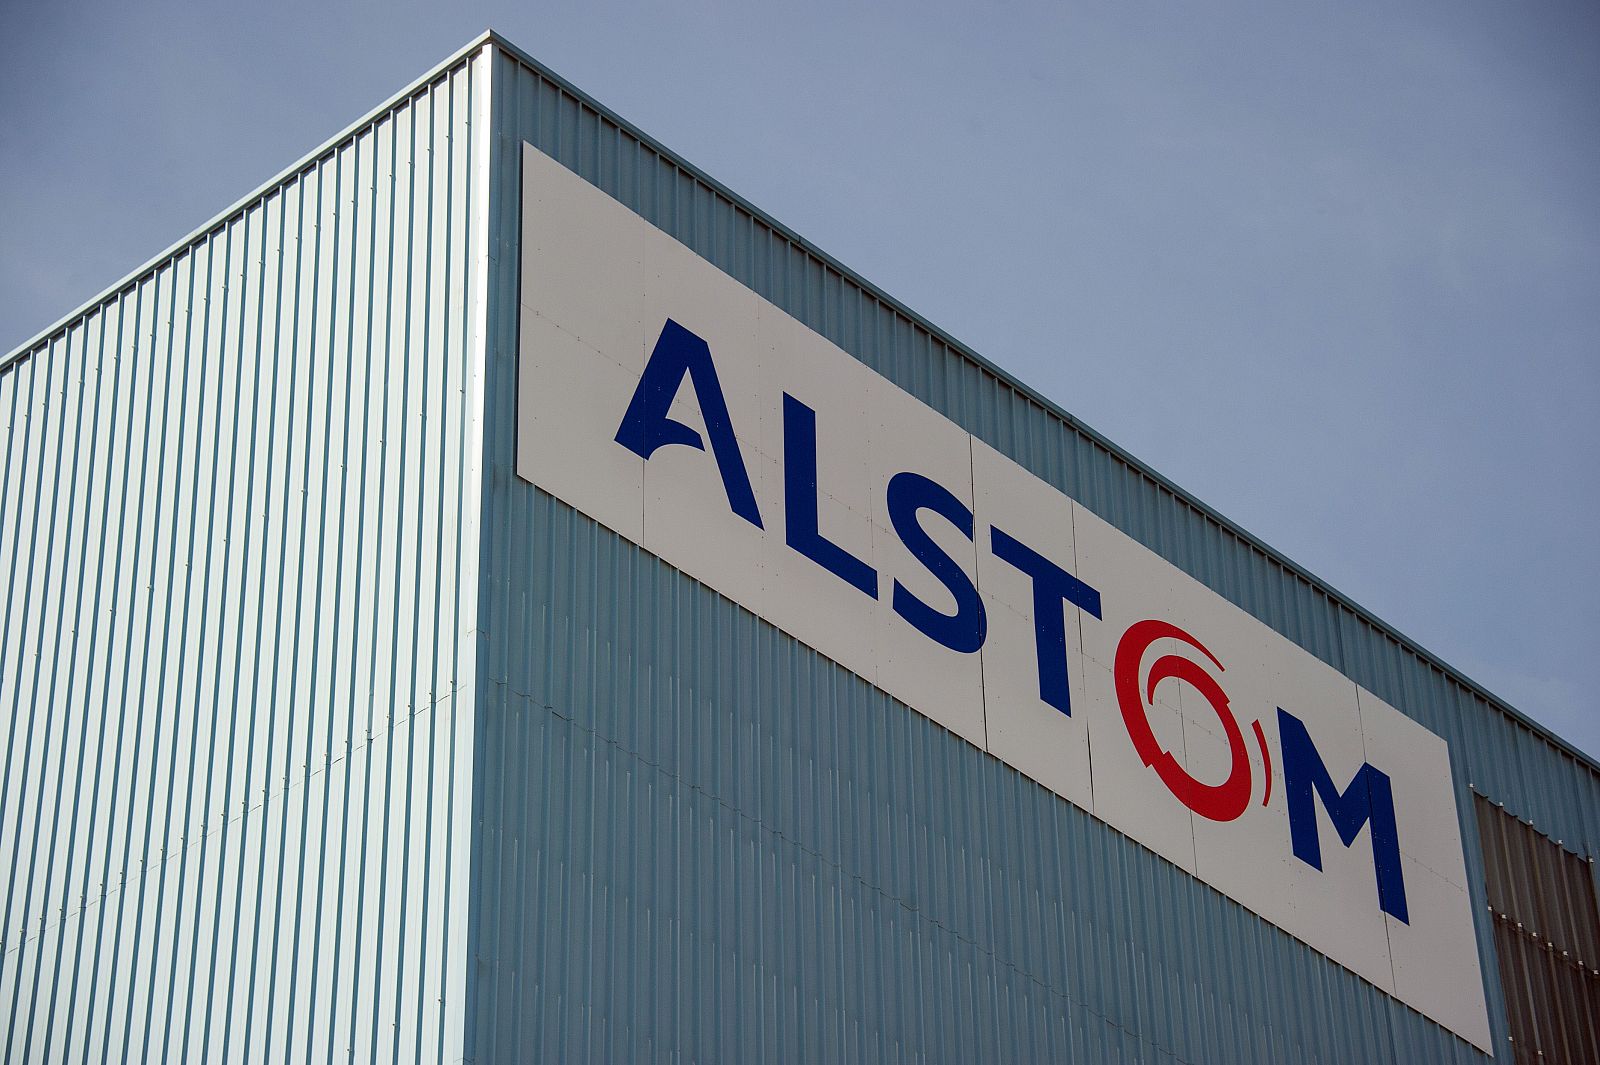 Imagen de la fábrica de Alstom en Belfort, Francia